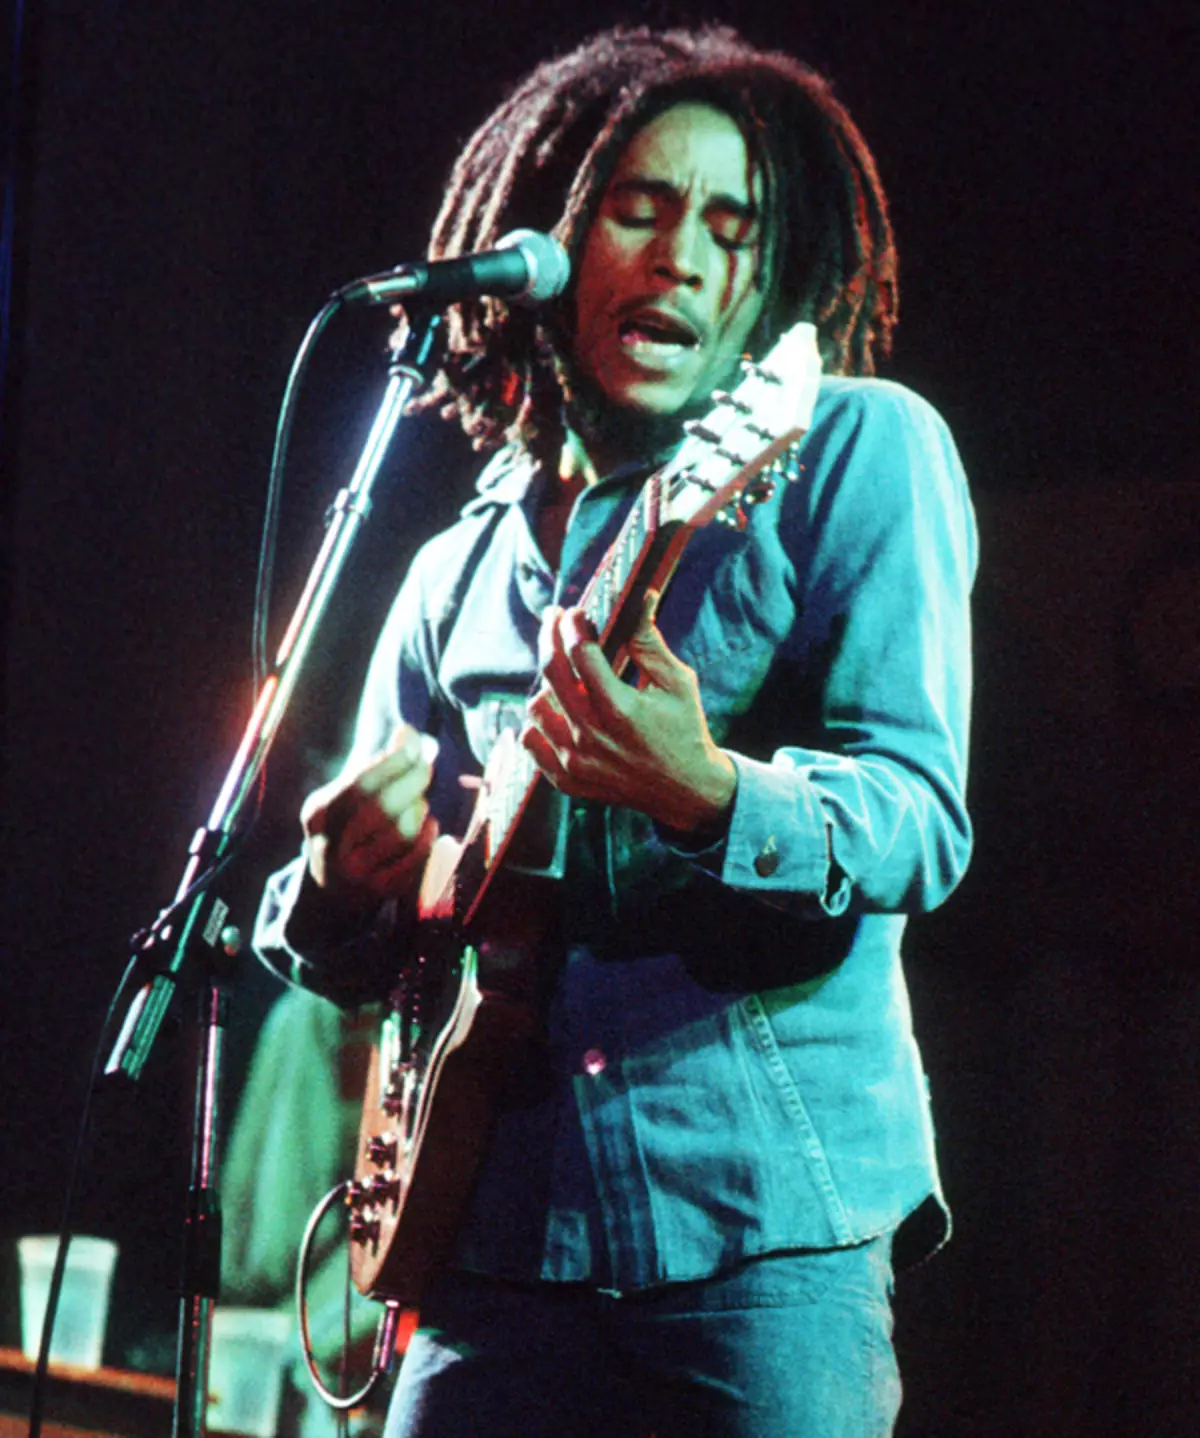 Boba Marley ไม่สามารถเรียกว่าหล่อ แต่ผู้หญิงคลั่งไคล้เขา